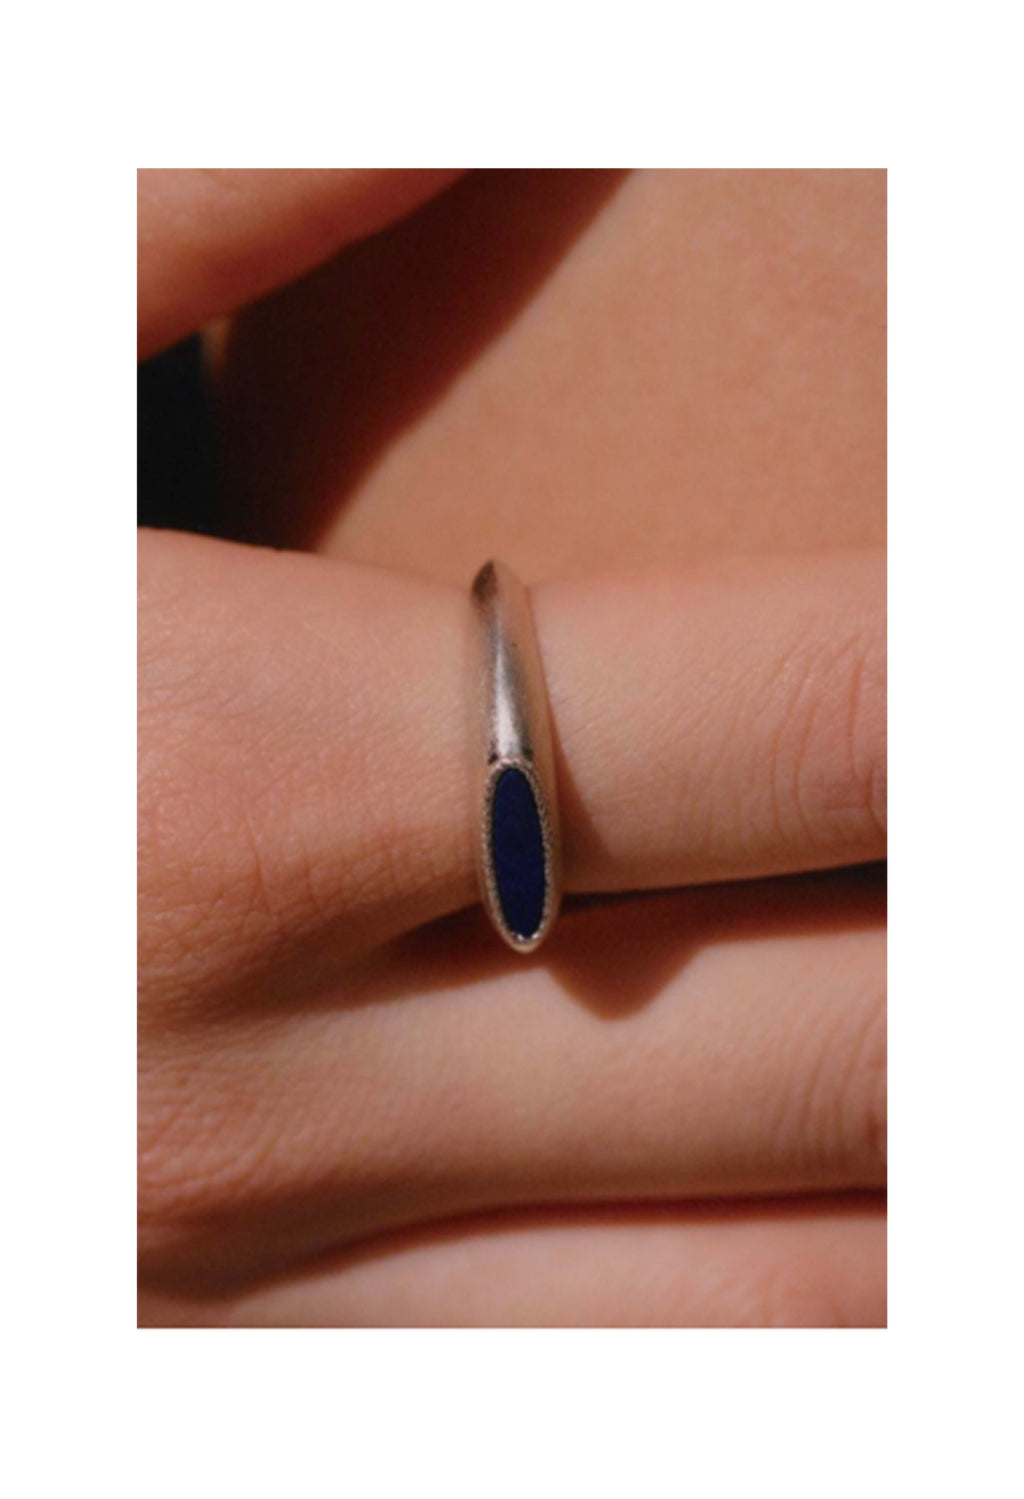 Klein's blue ring